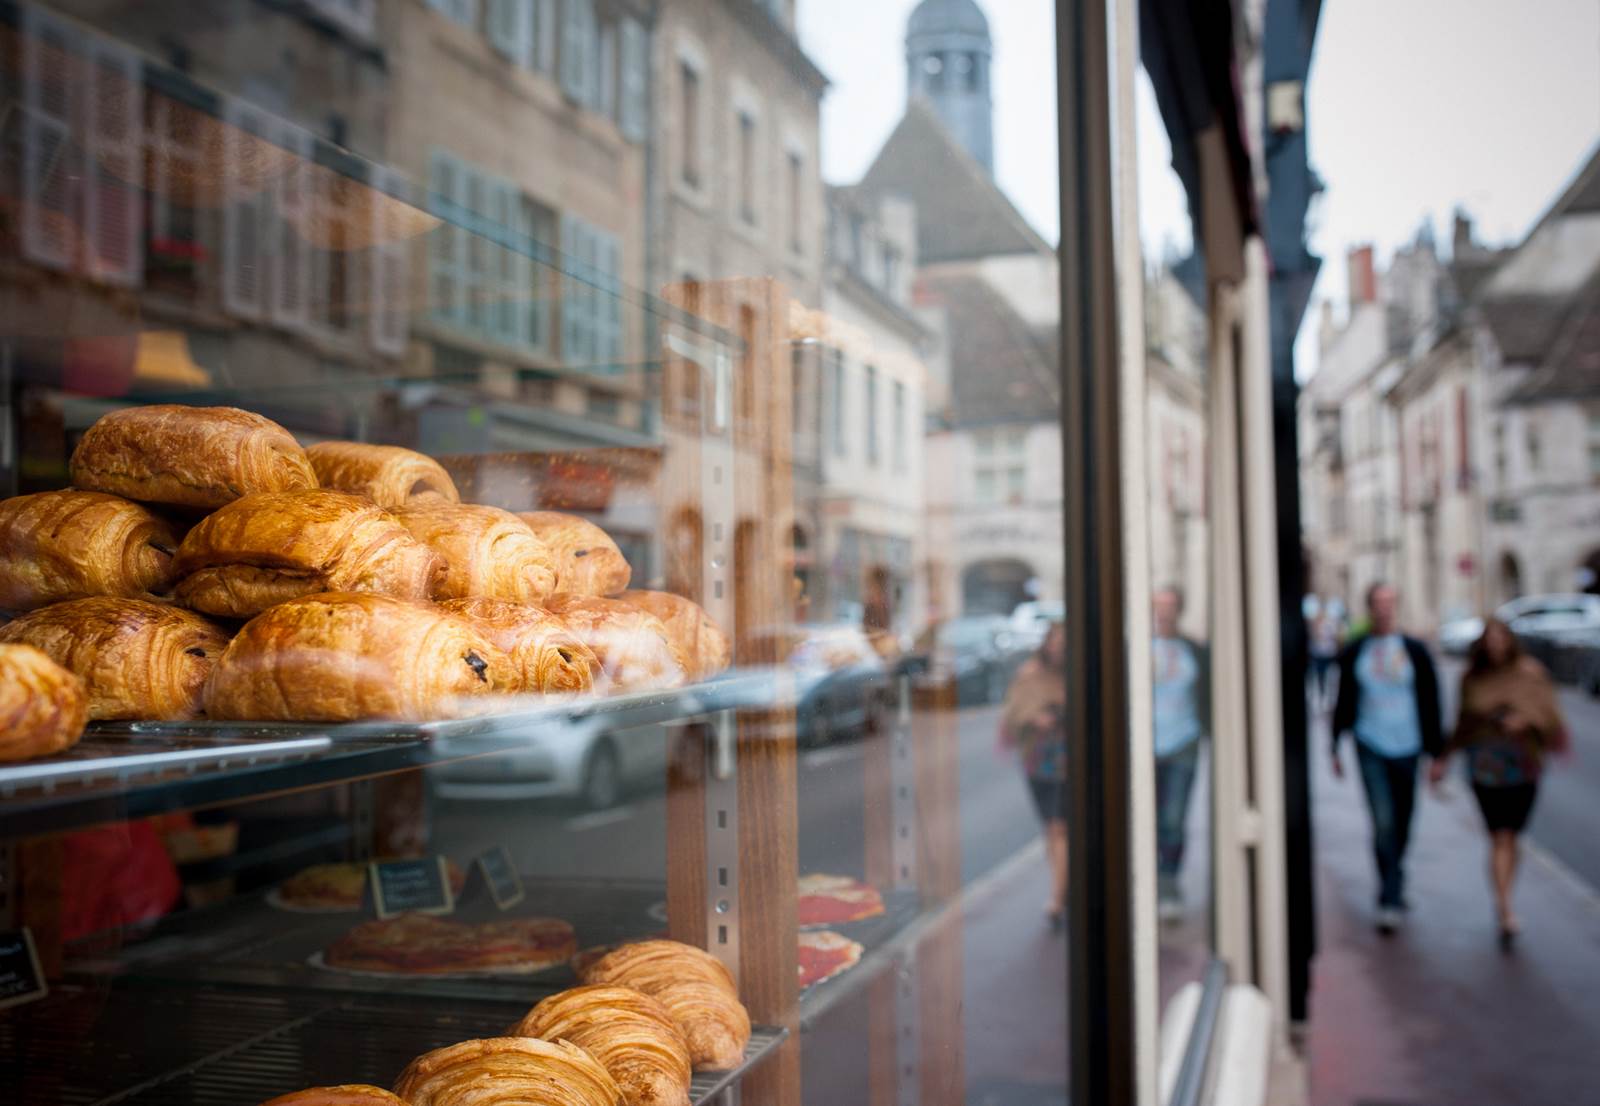 台灣夫婦挑戰巴黎烘焙圈! 台式麵包贏得饕客芳心 Taiwan-style bakery gains favor in Paris